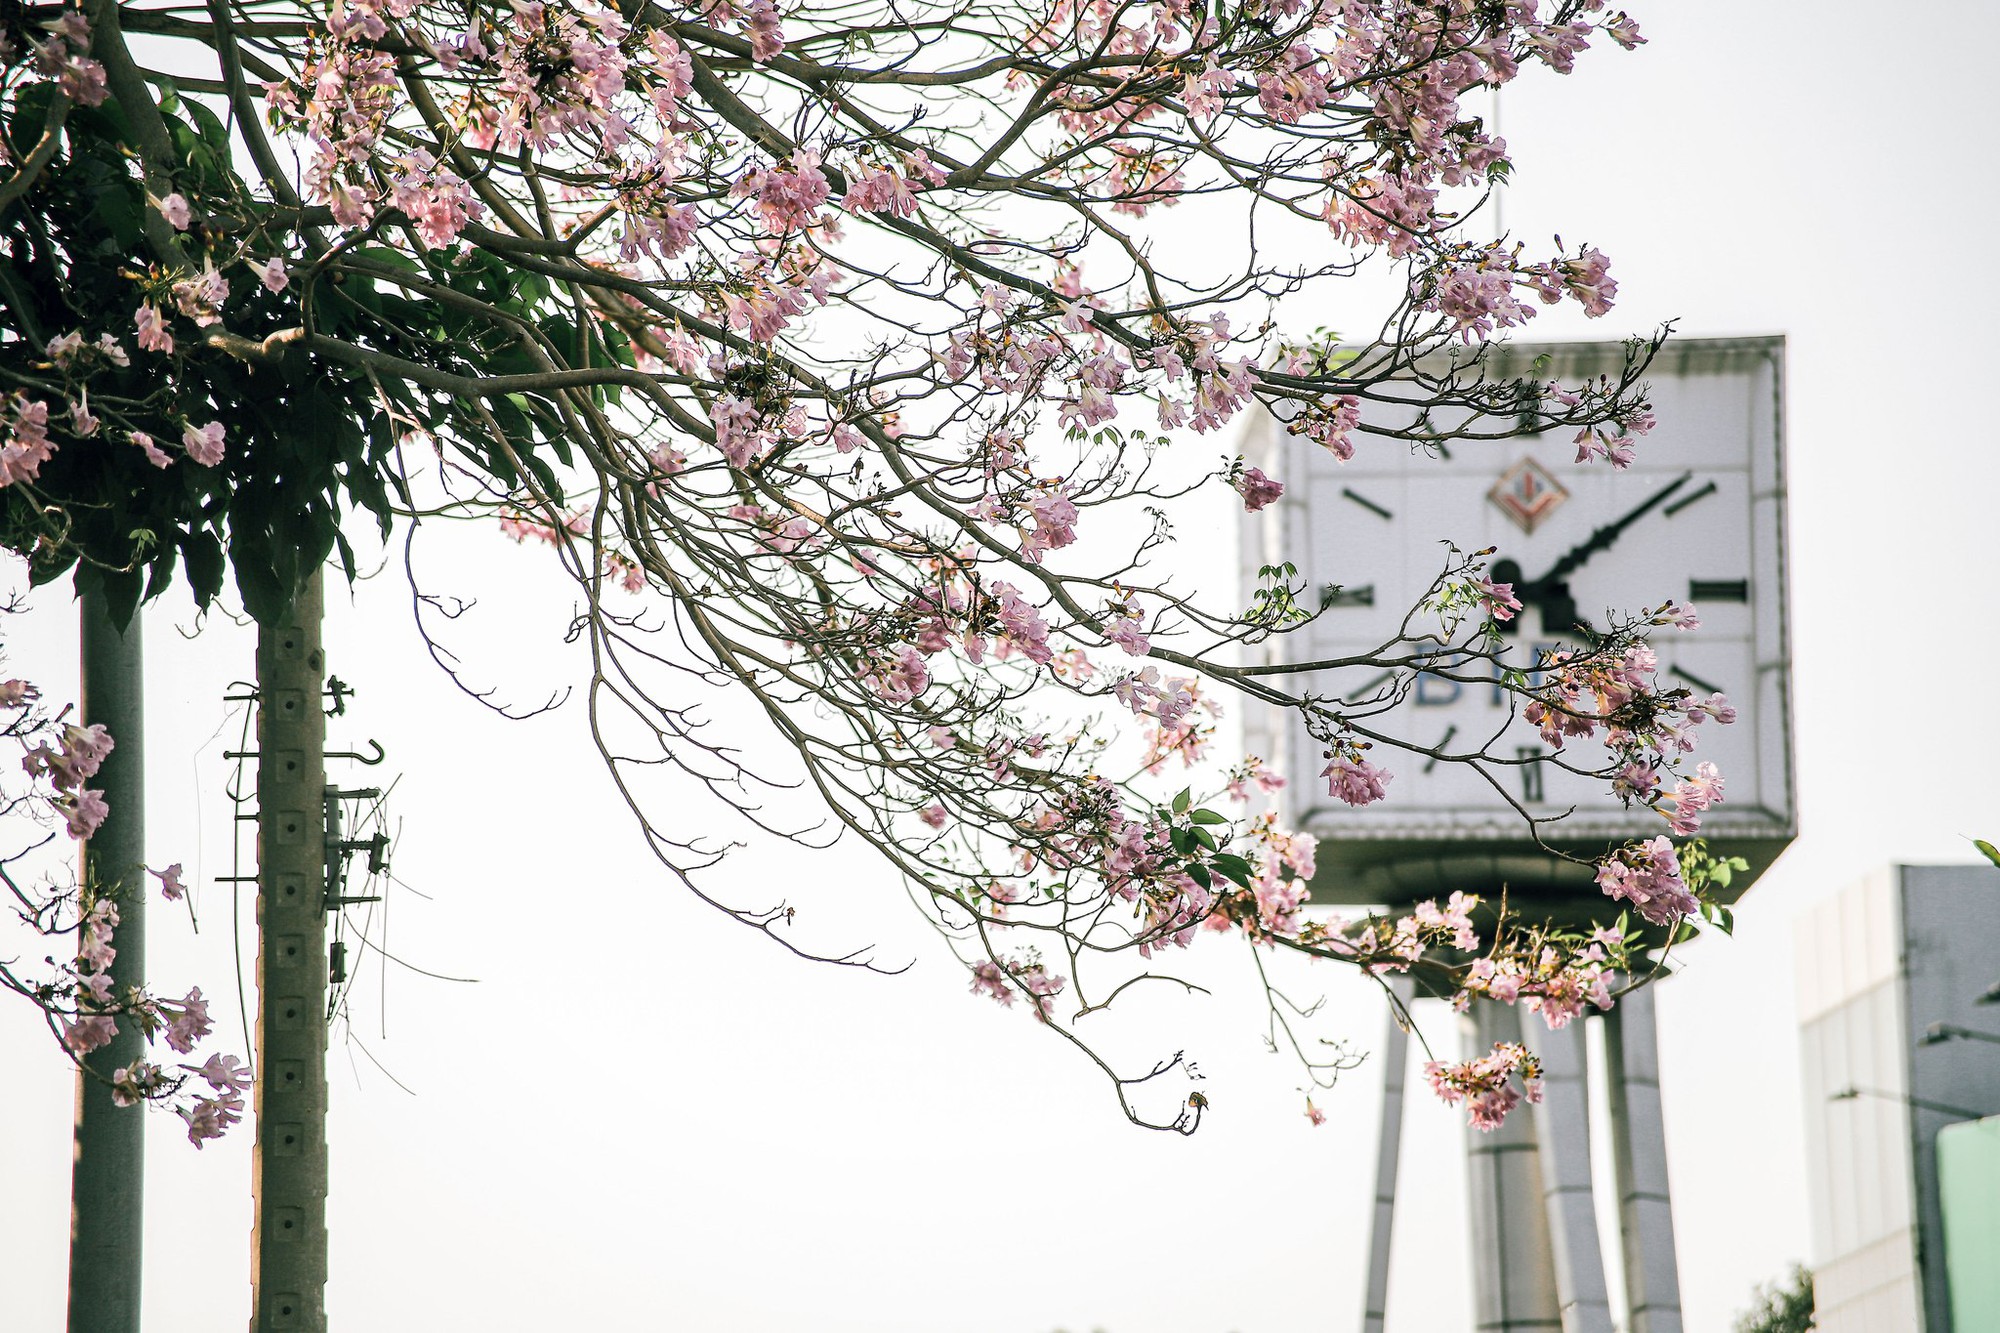 Mùa kèn hồng rợp trời Sài Gòn, chợt thấy thành phố mộng mơ biết bao giữa sắc hoa rực rỡ- Ảnh 3.